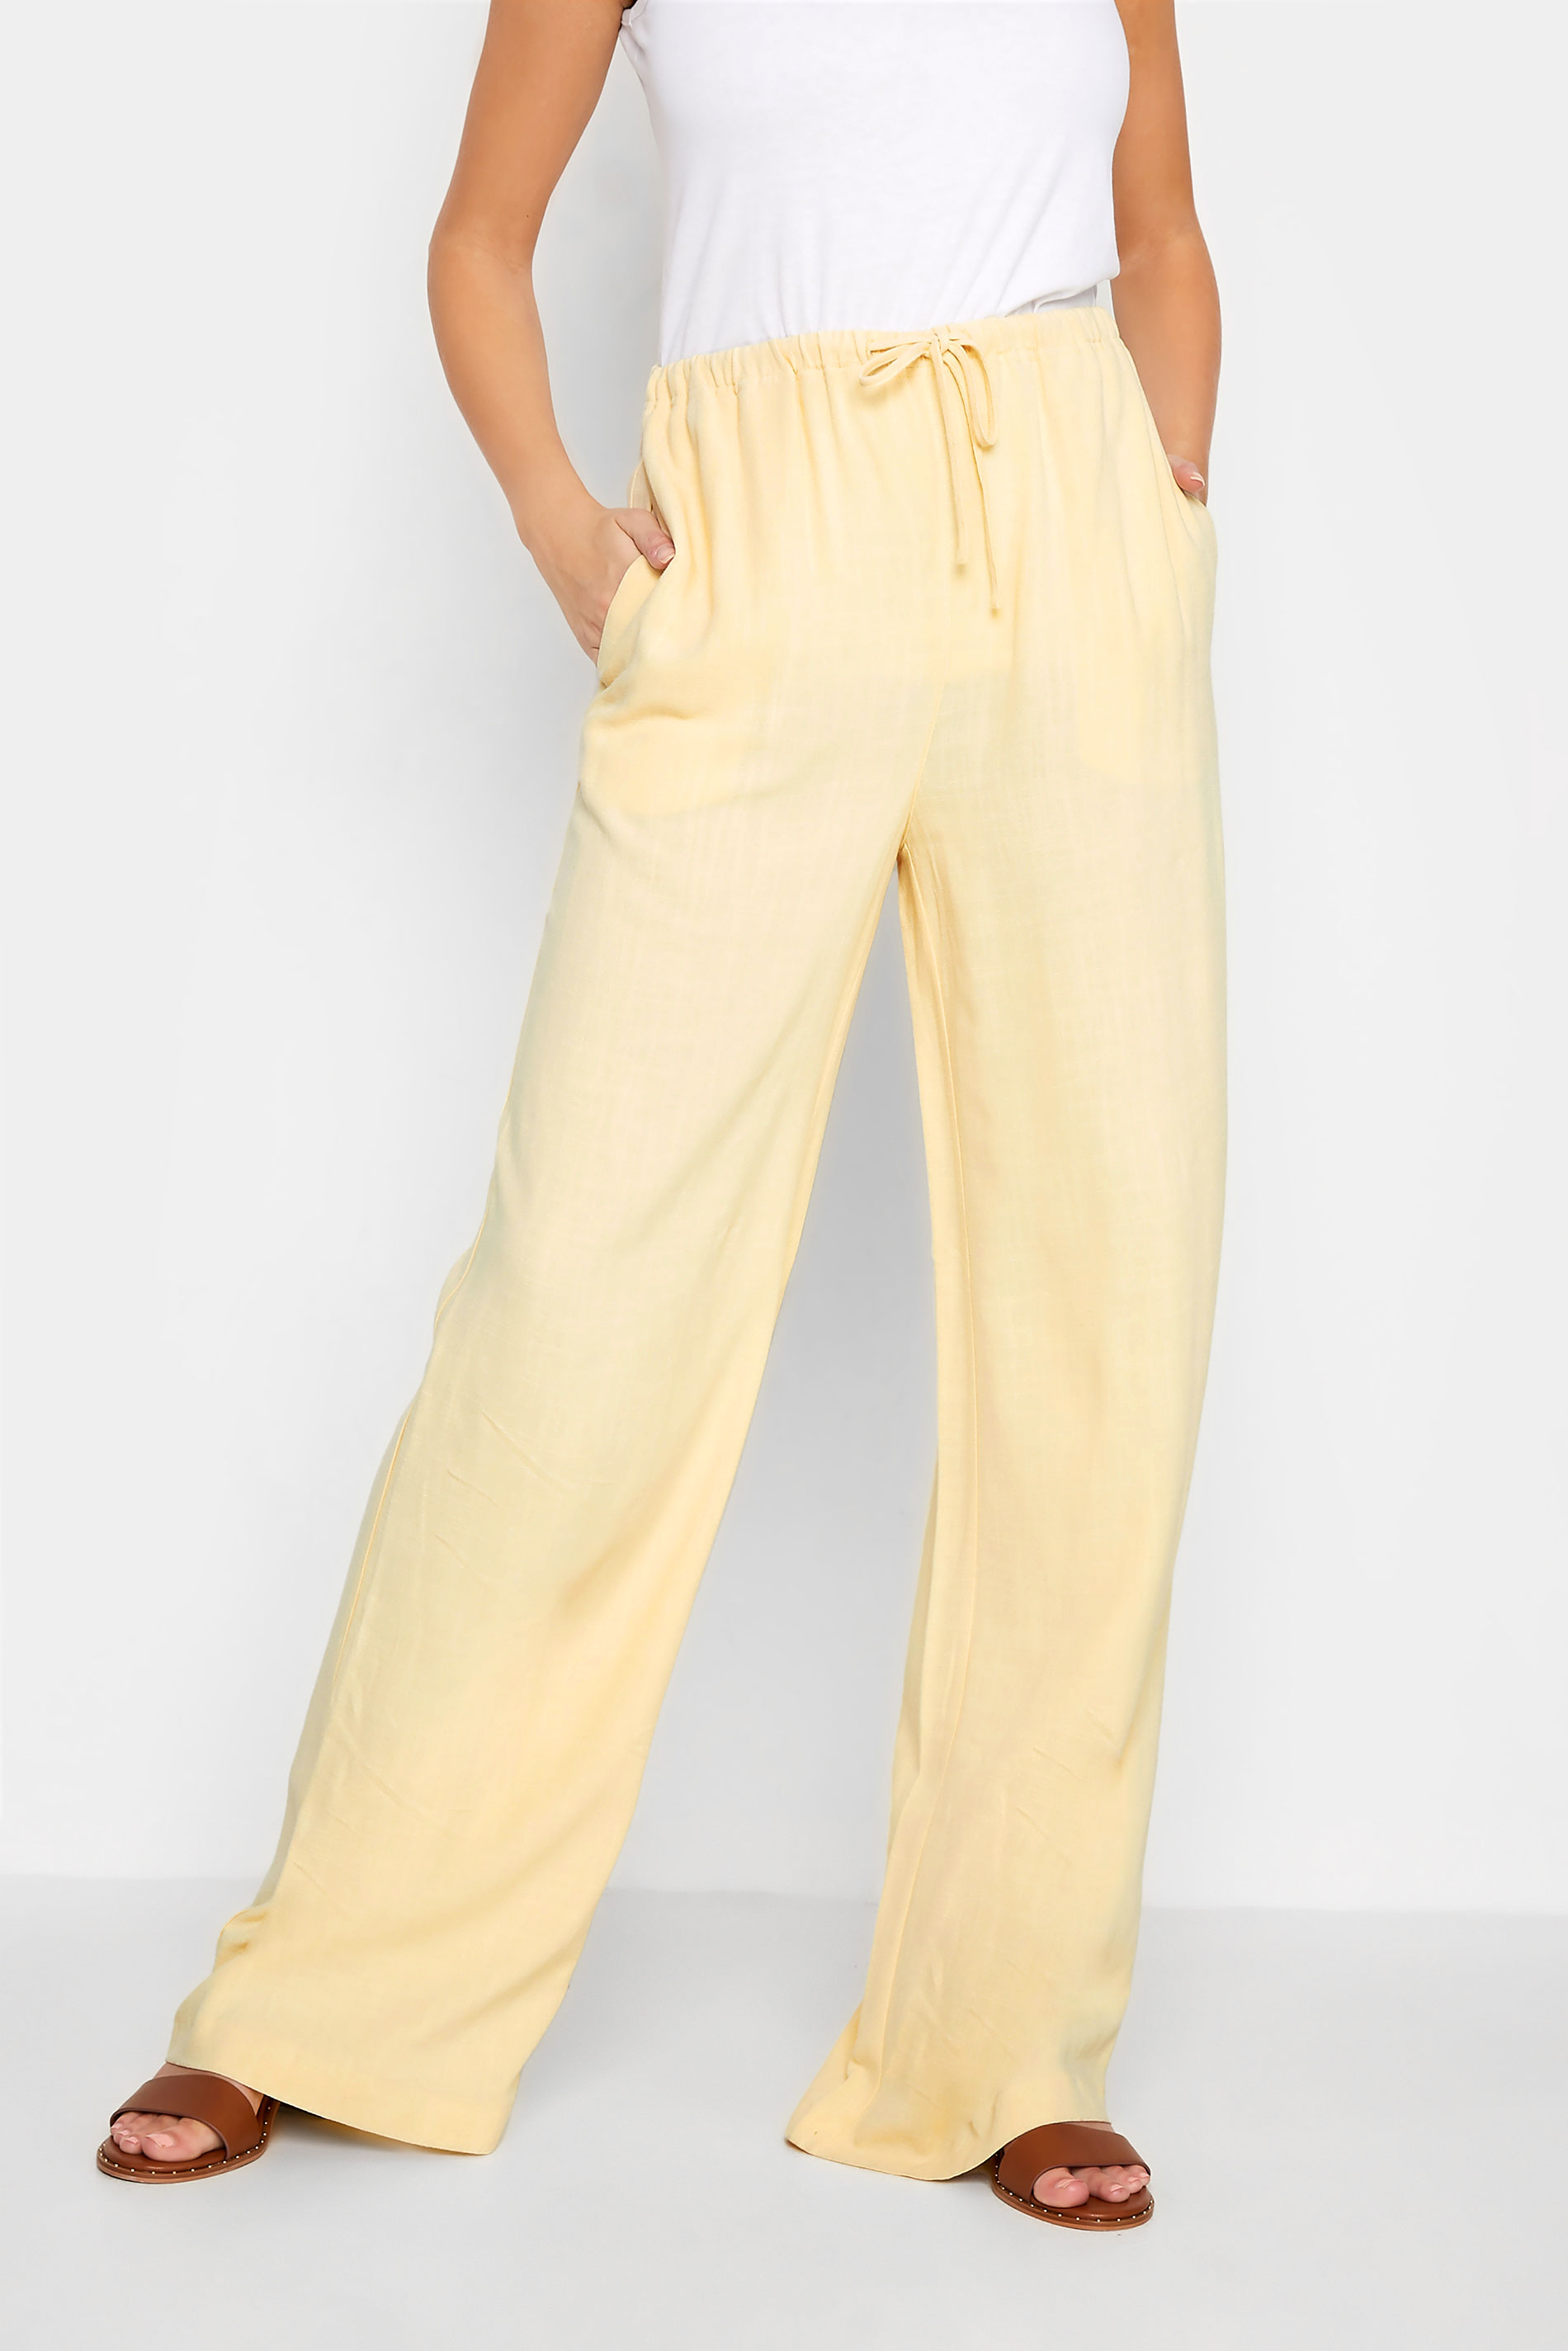 RILEY Linen Pants for Women / Wide Leg Linen Trousers in Yellow Honey /  Palazzo Pants -  Hong Kong